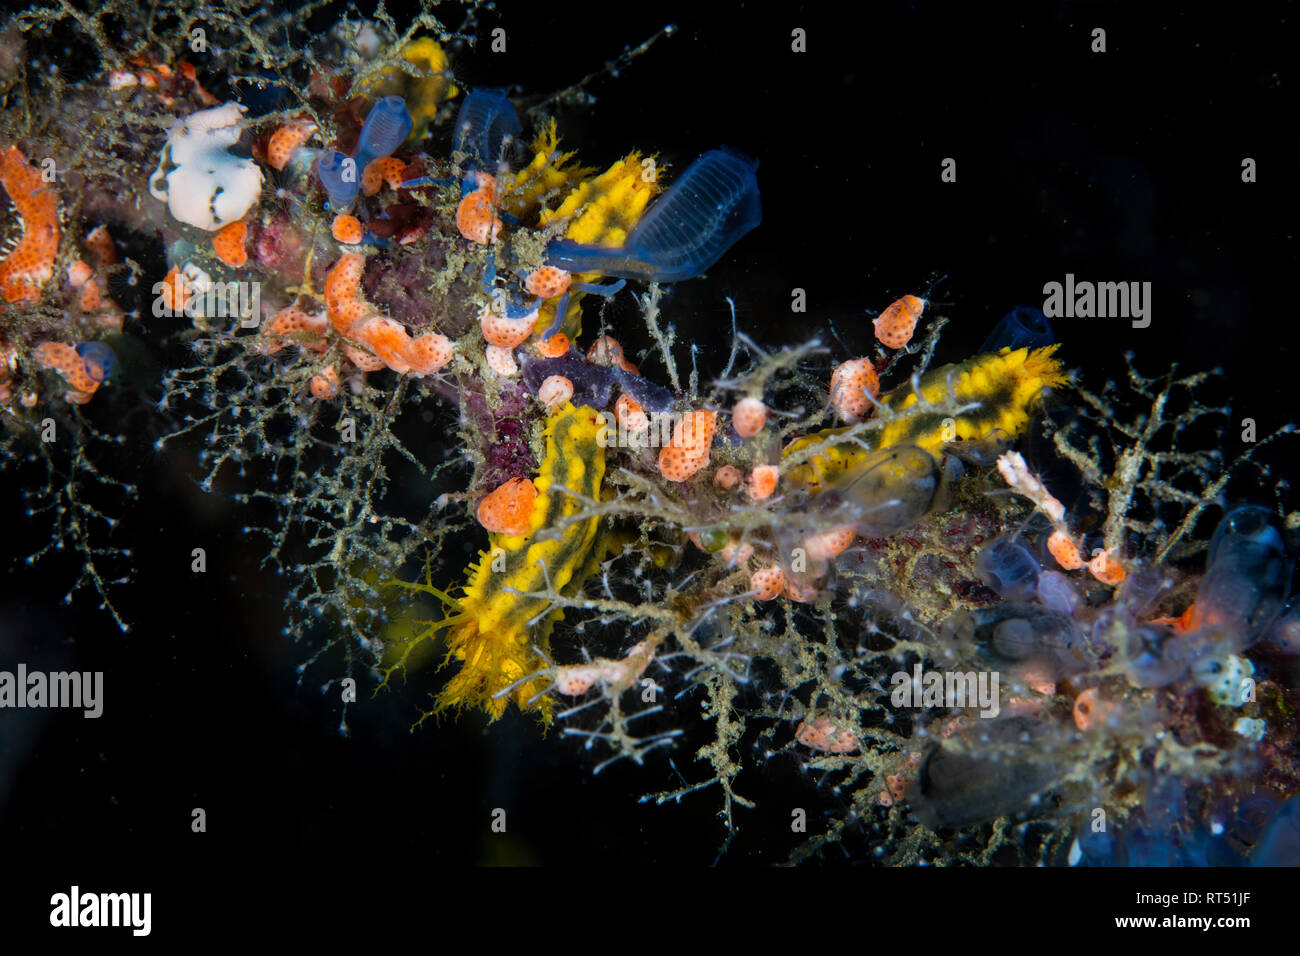 Les tuniciers colorés, d'éponges, les hydroïdes, et d'autres invertébrés croître sur un récif. Banque D'Images